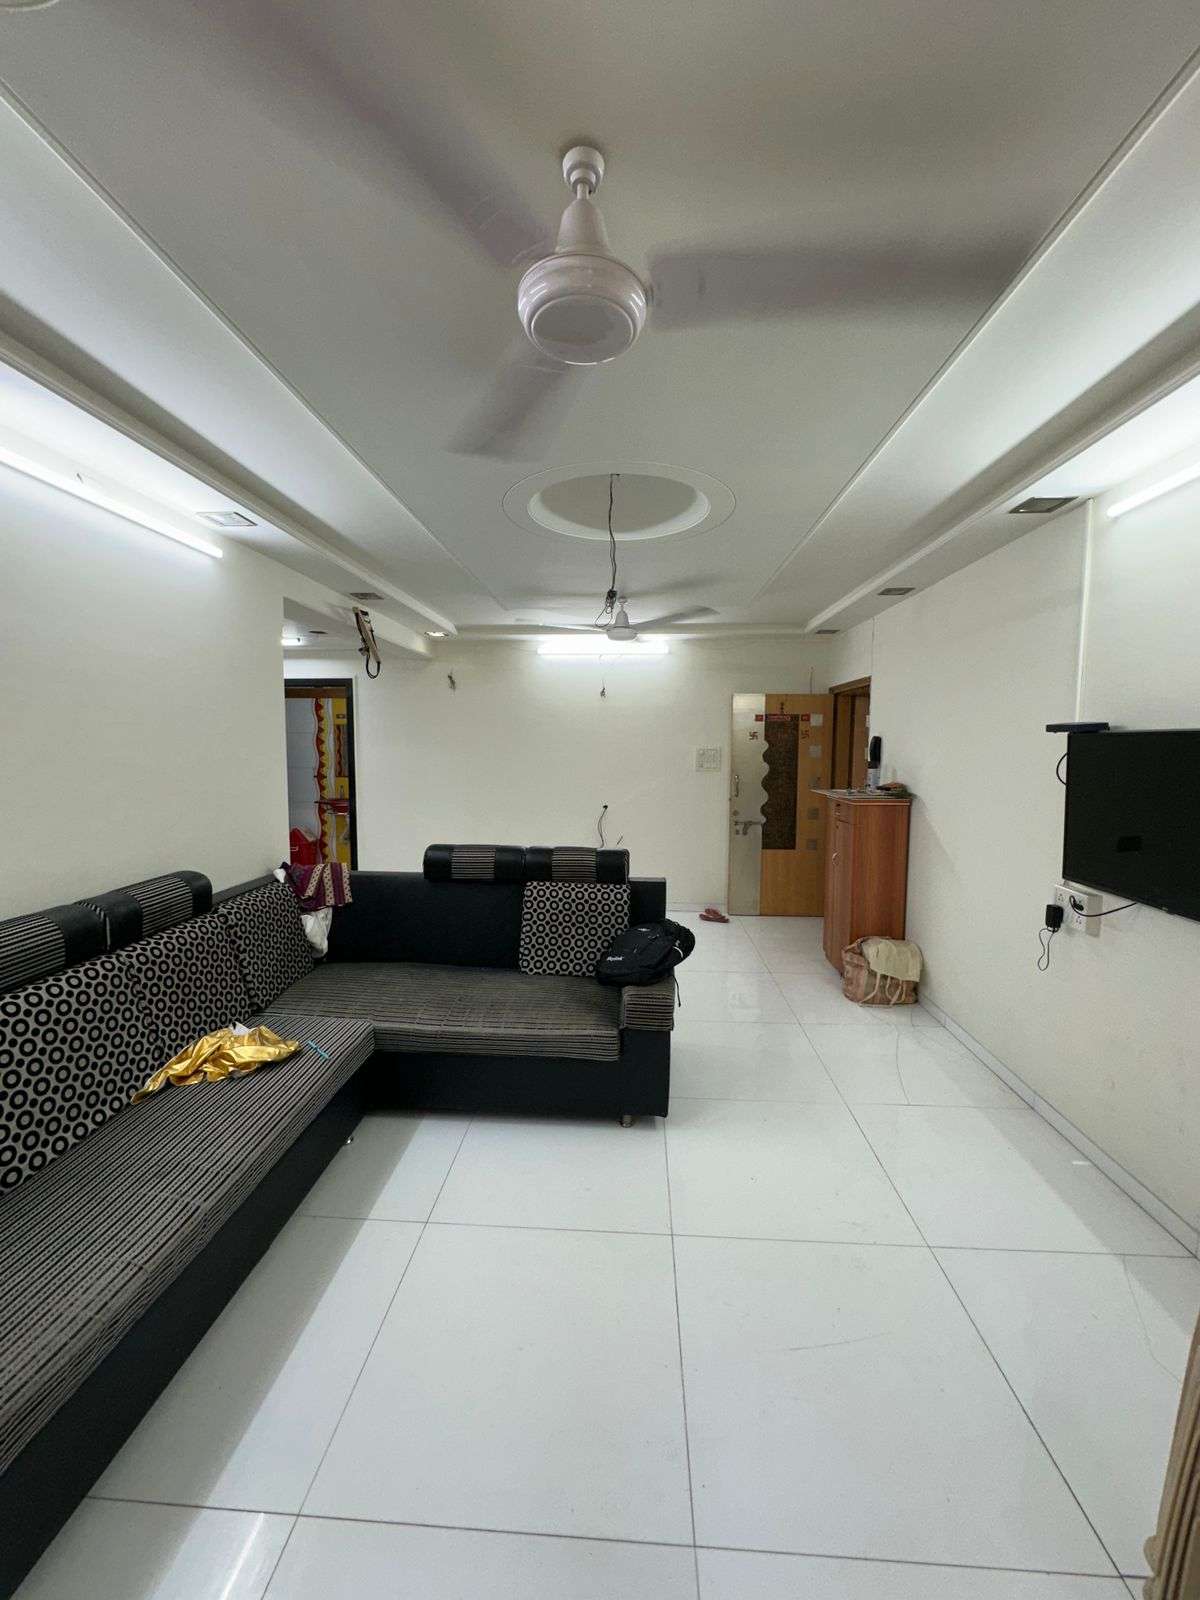 3 BHK Apartment For Resale in Saket Apartment Borivali Borivali West Mumbai 6682349